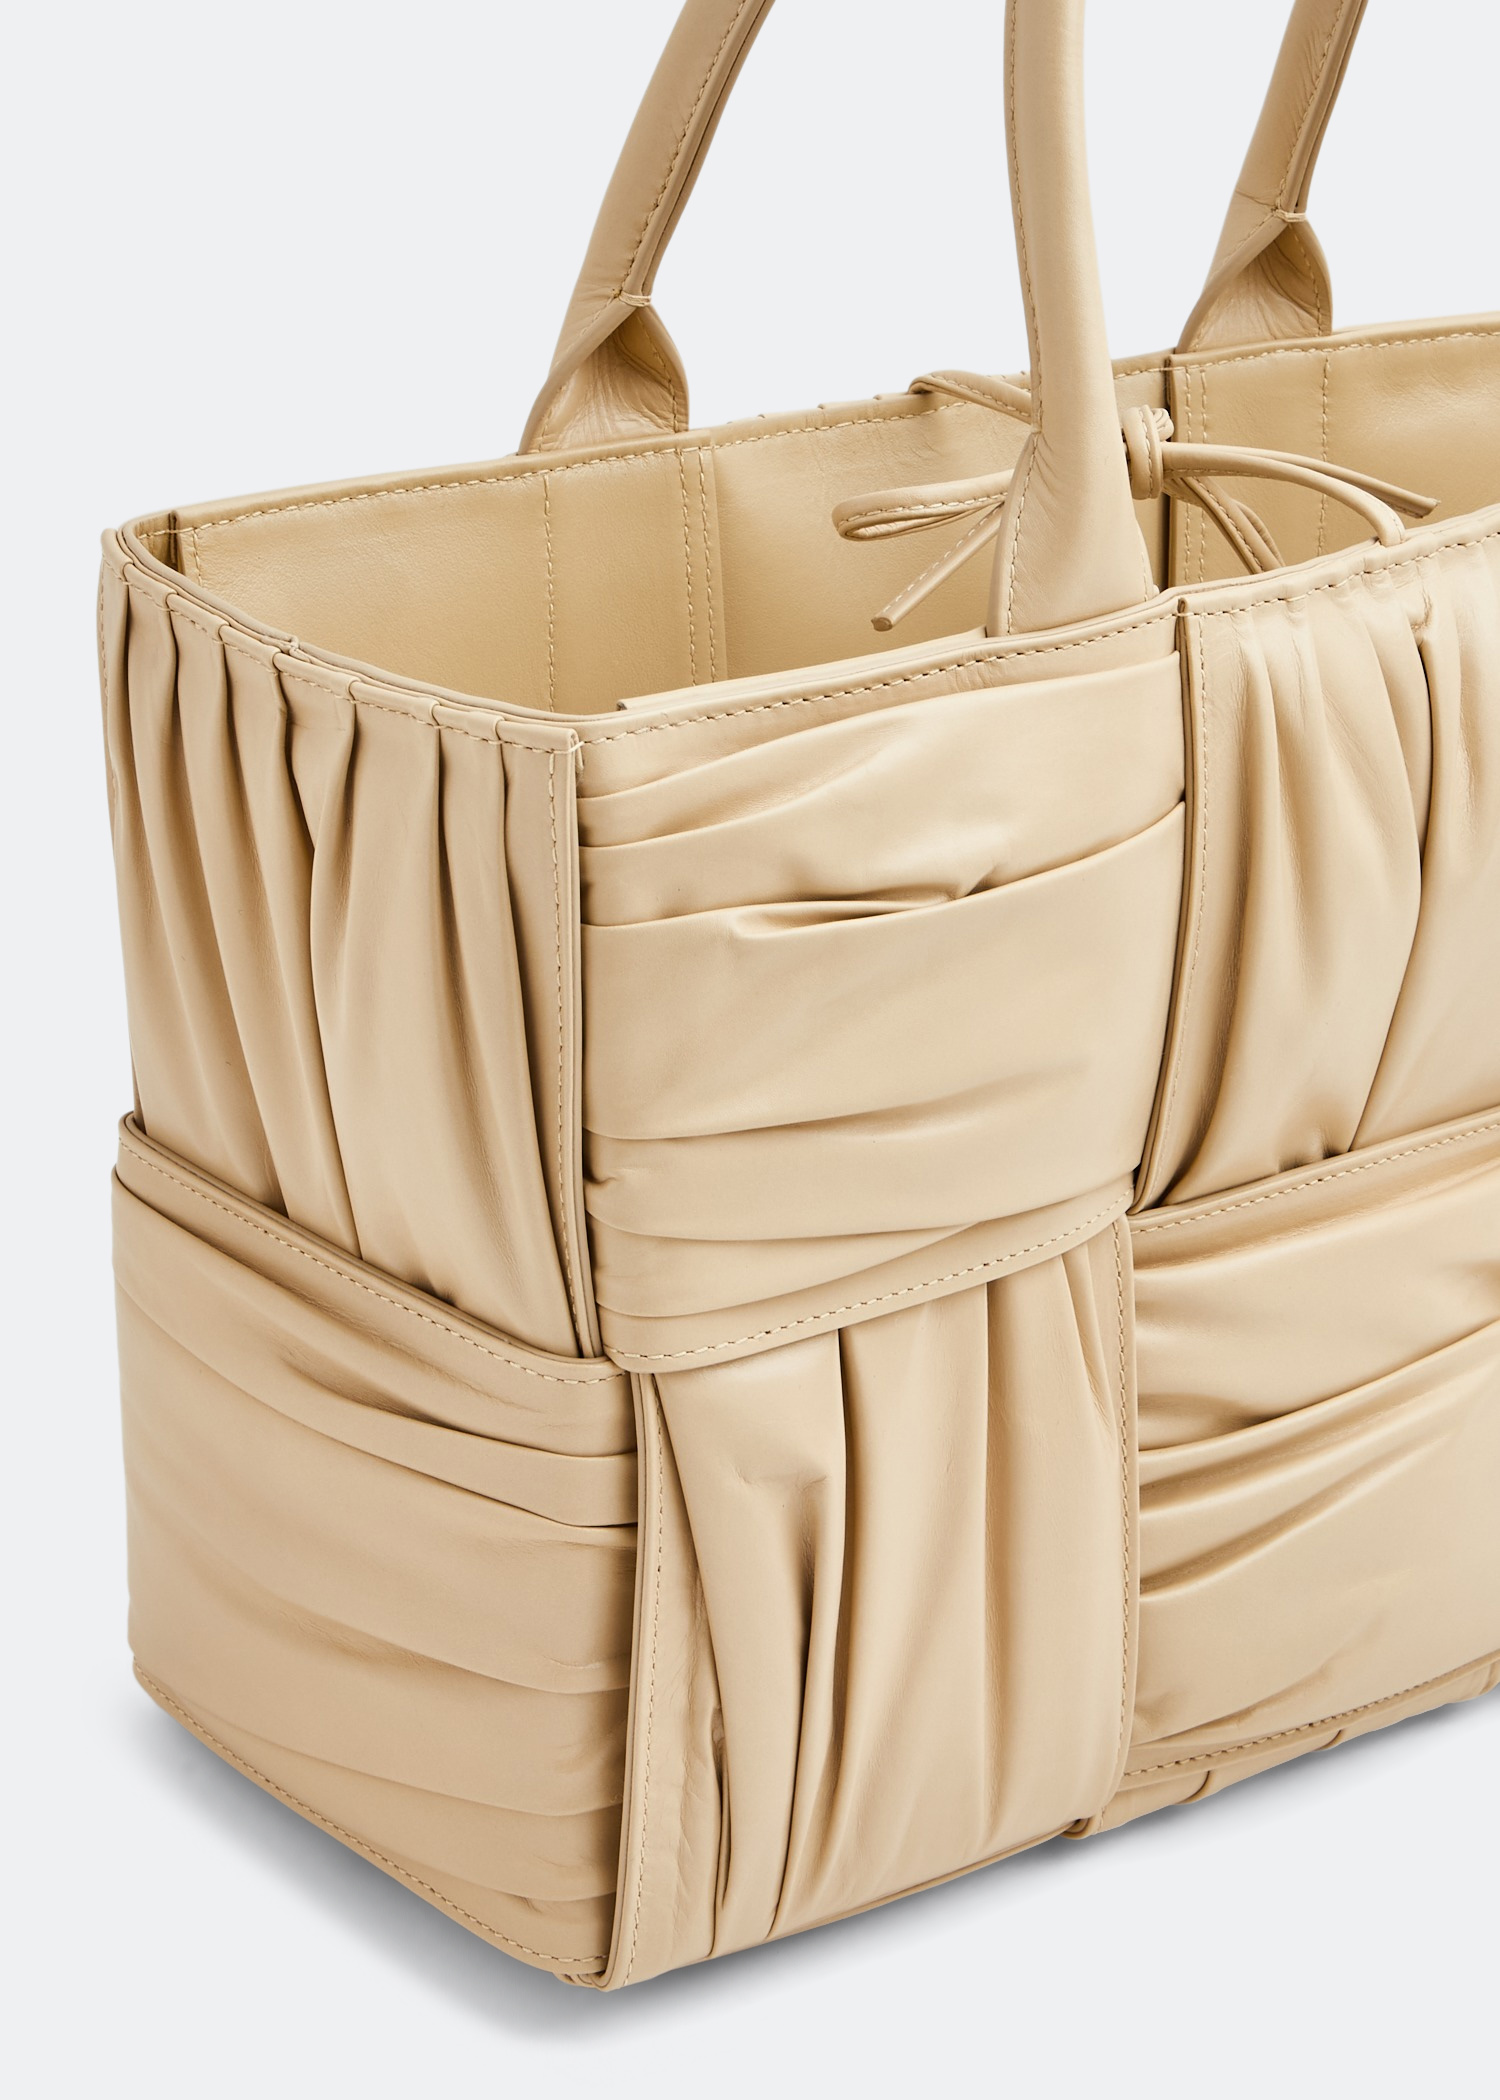 Bag Organiser Bag Insert for Bottega Veneta Arco Leather Tote Bag